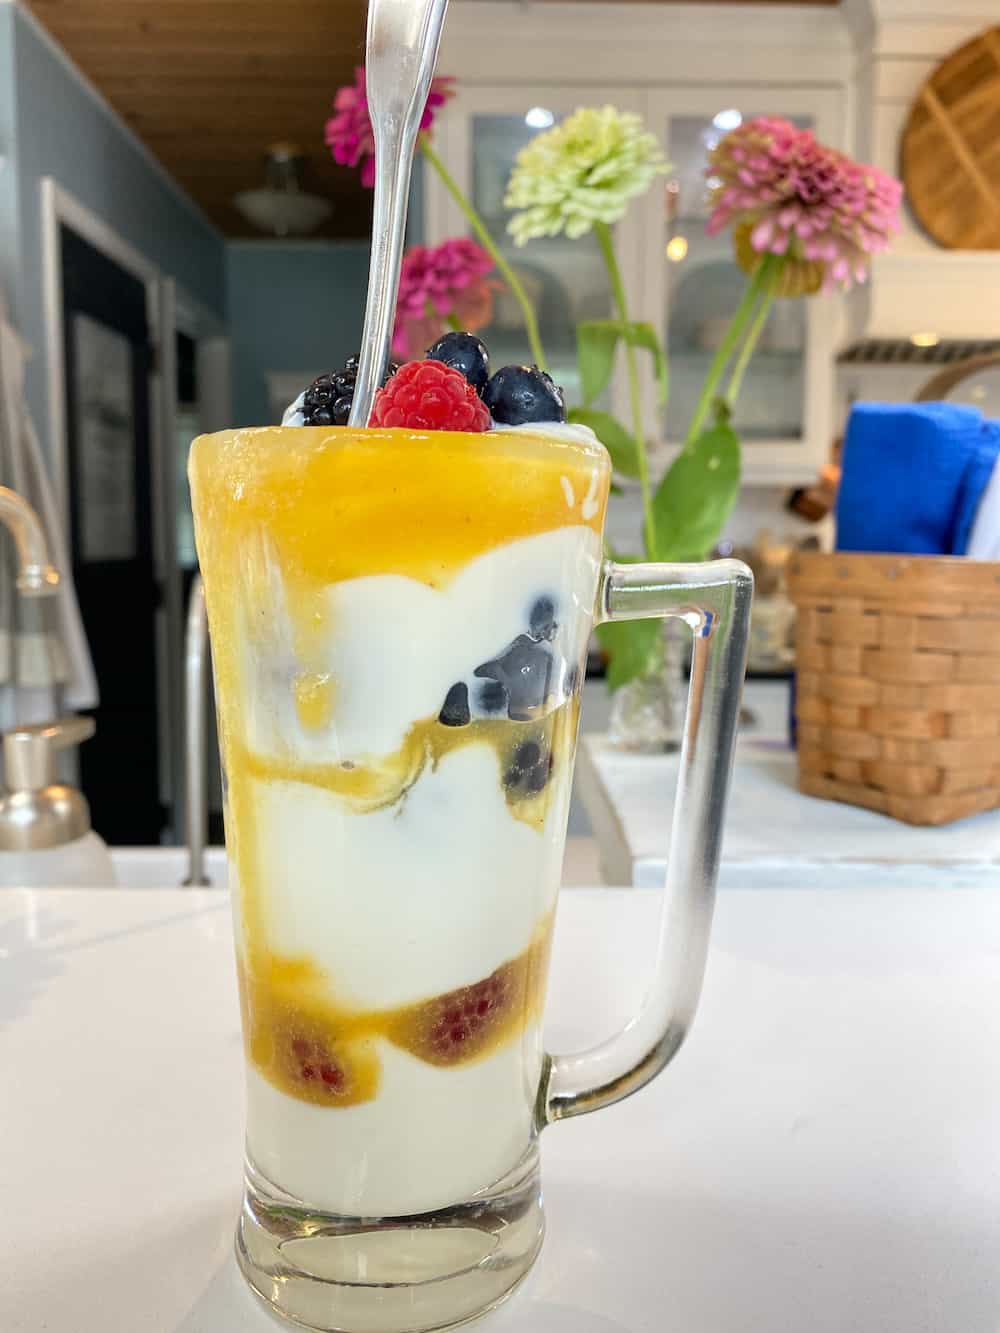 peach syrup, yogurt and fresh berries layered in a glass mug